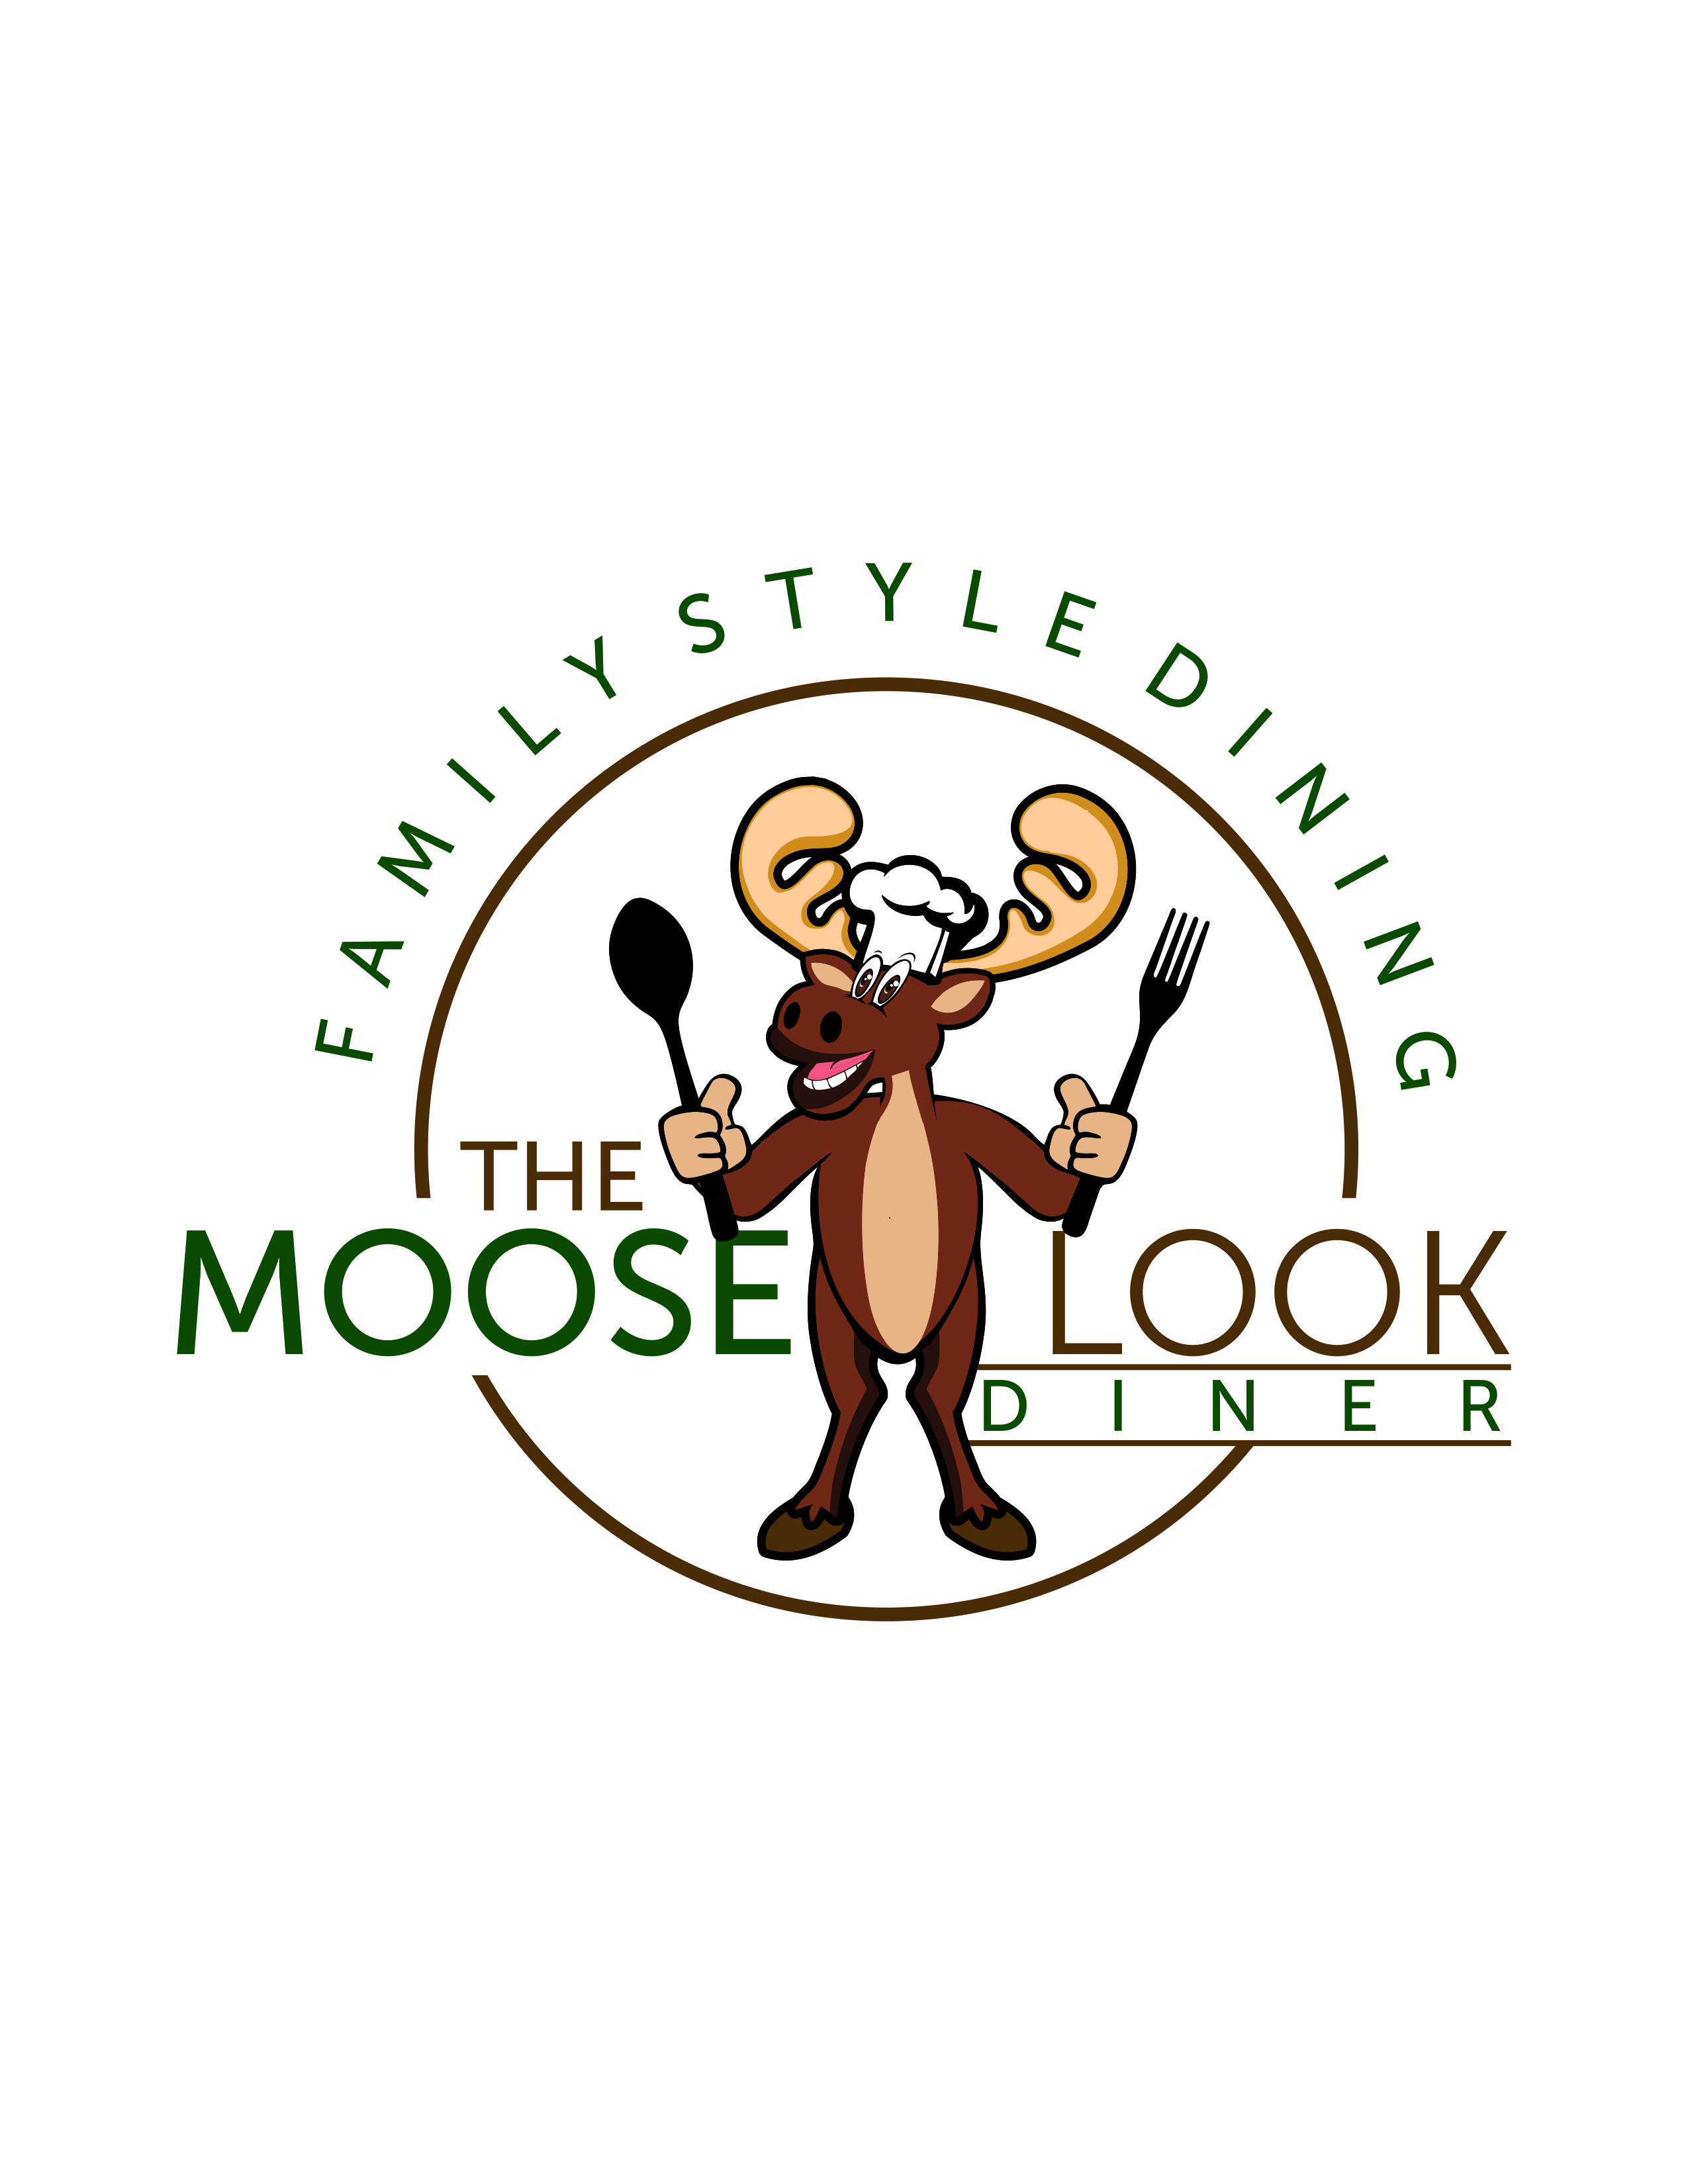 The Mooselook Restaurant